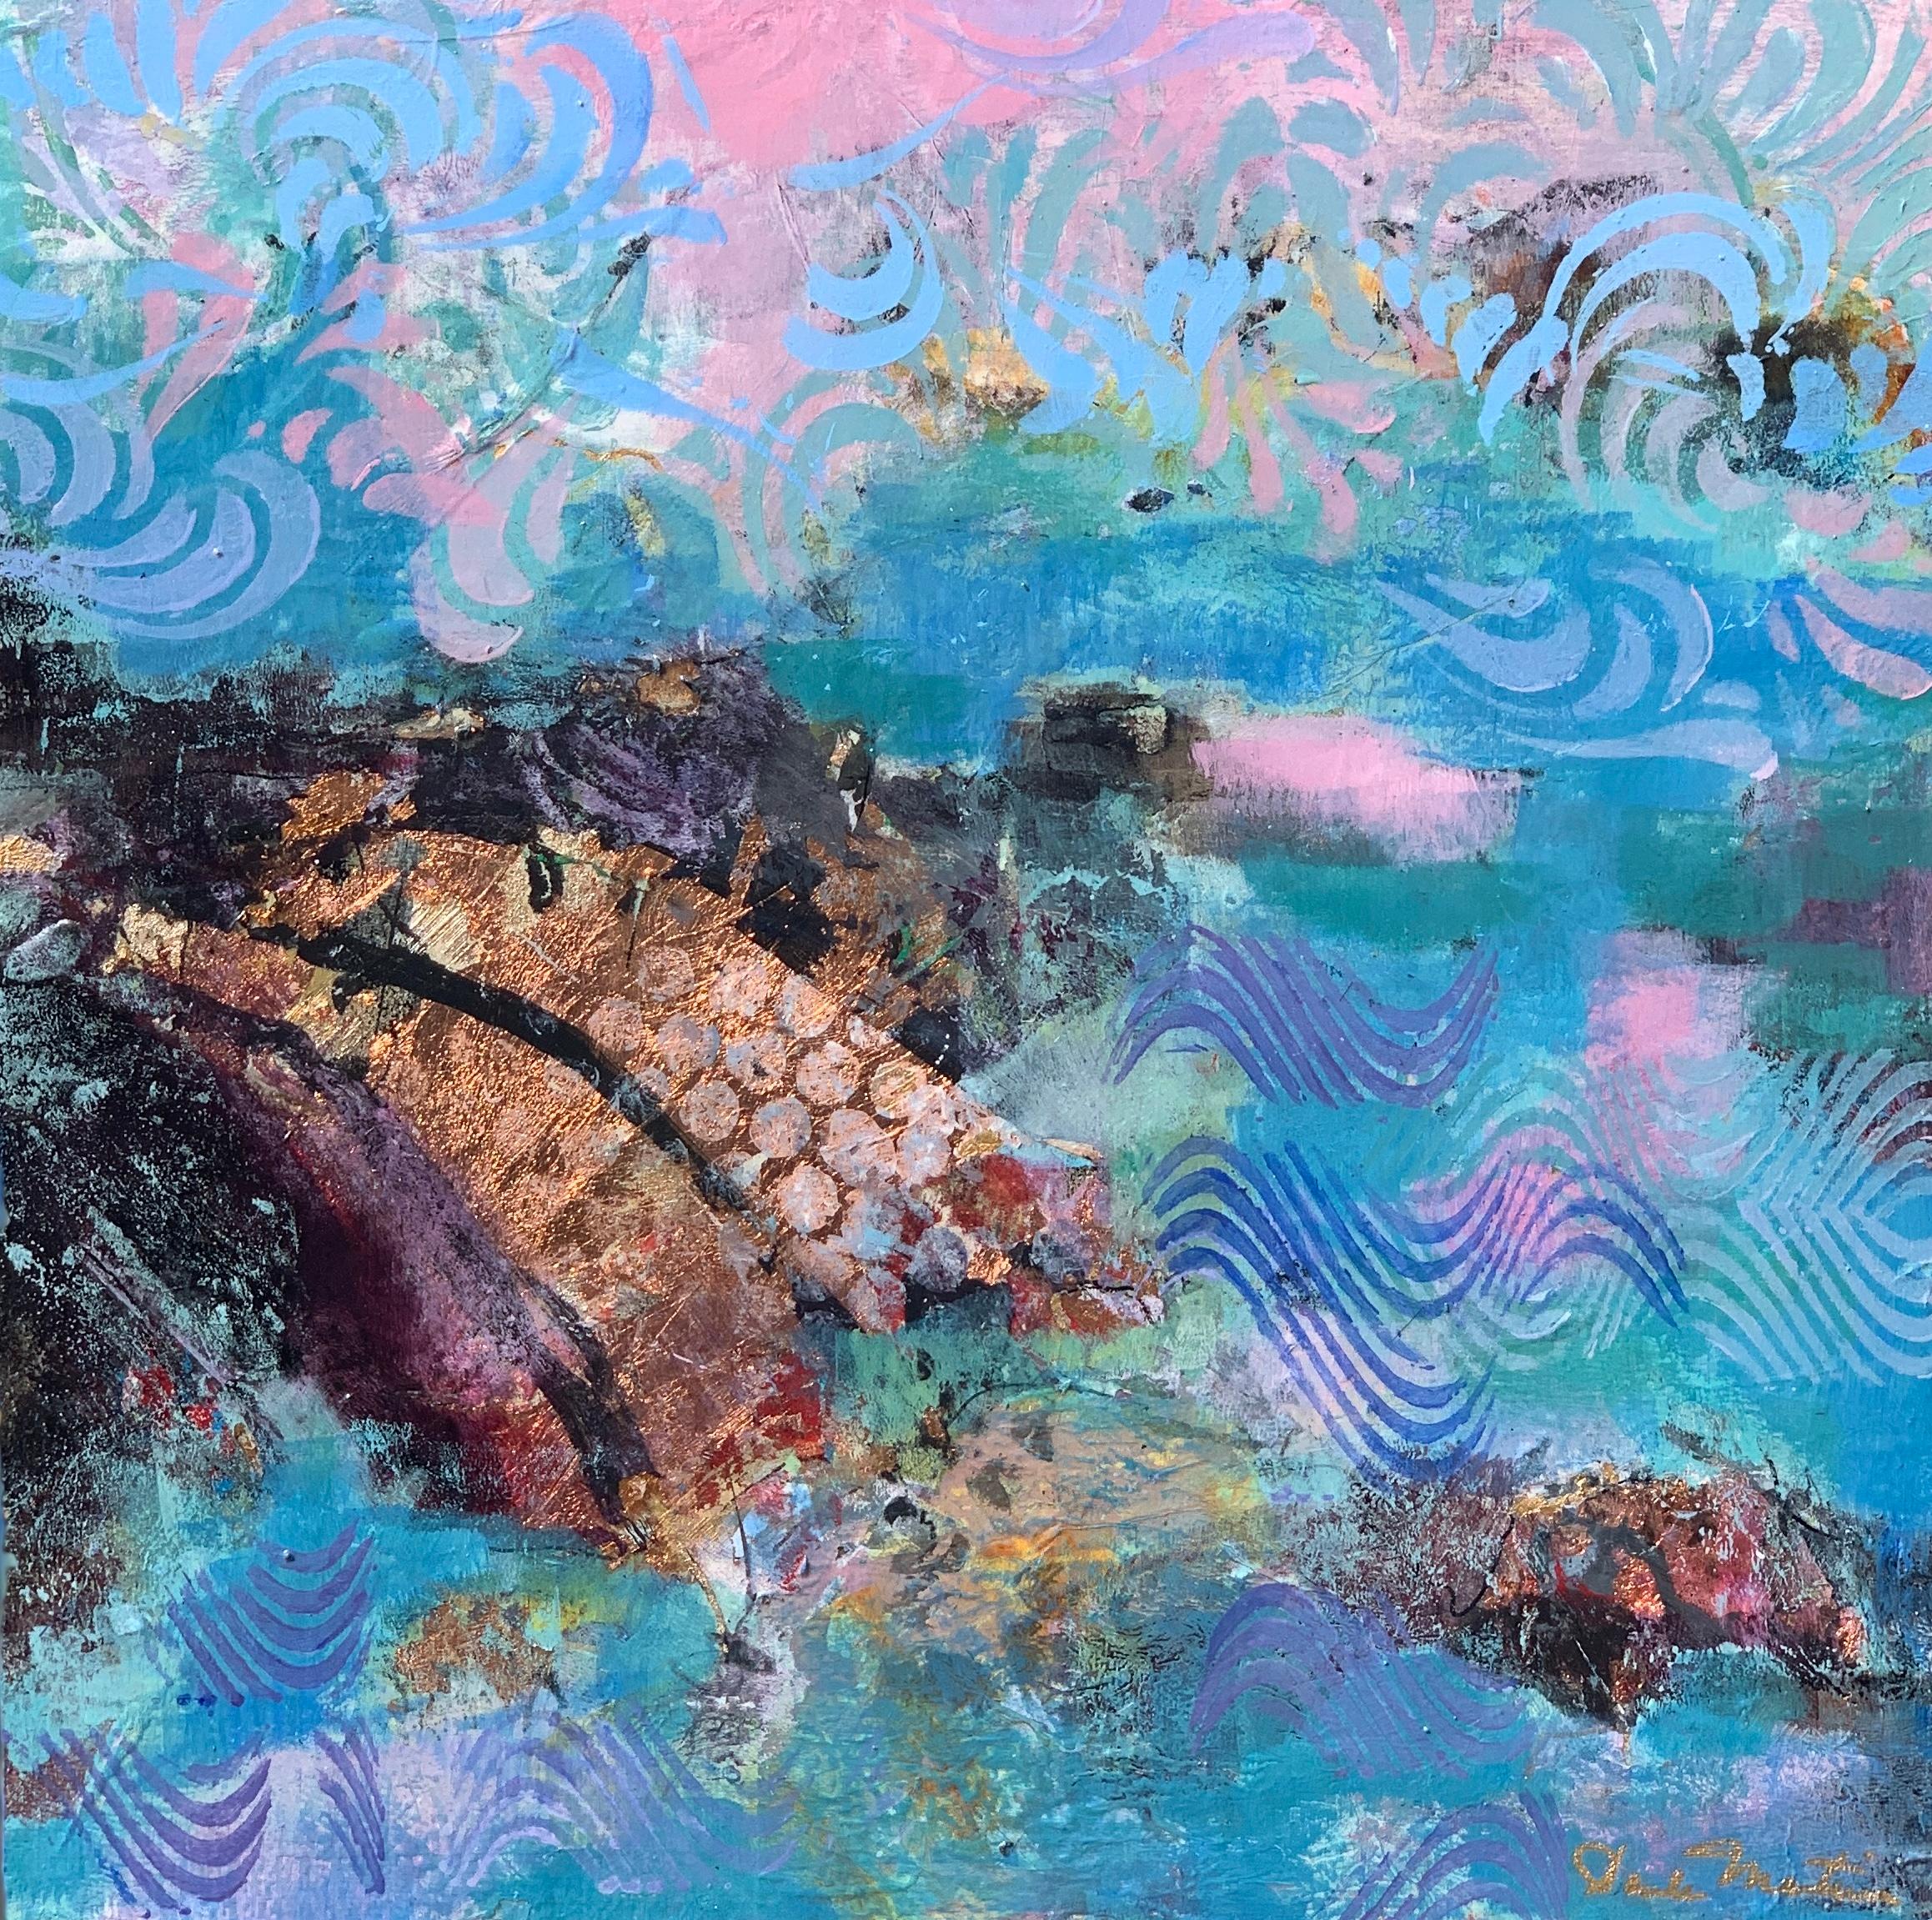 Shipwreck, Abstract Painting - Mixed Media Art by Paula Martino